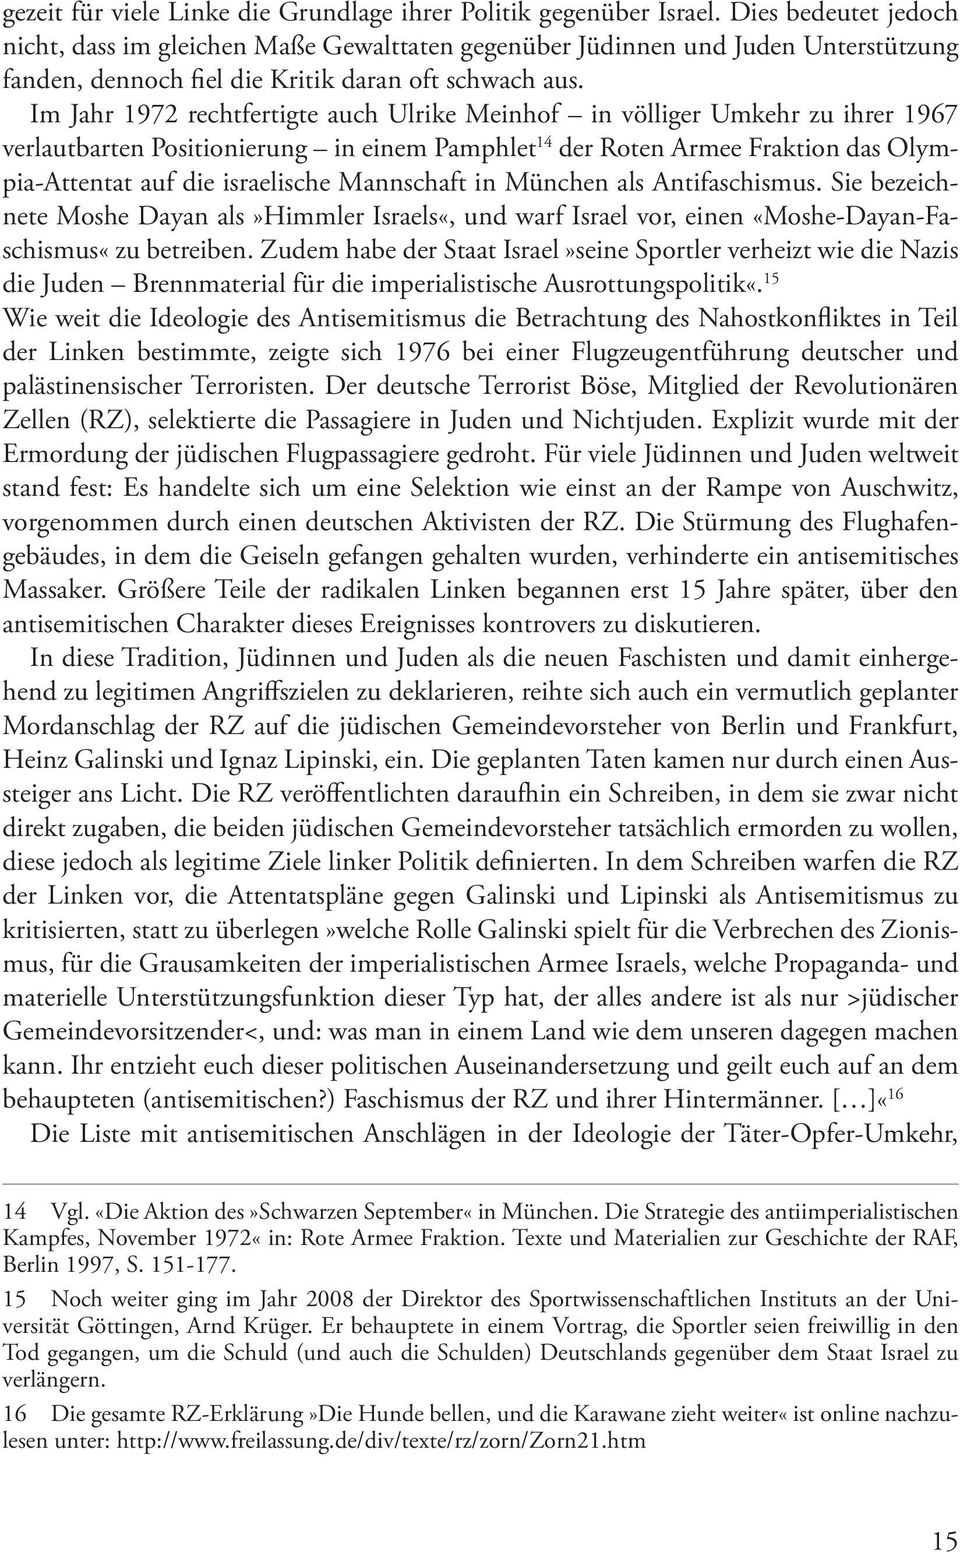 Im Jahr 1972 rechtfertigte auch Ulrike Meinhof in völliger Umkehr zu ihrer 1967 verlautbarten Positionierung in einem Pamphlet 14 der Roten Armee Fraktion das Olympia-Attentat auf die israelische